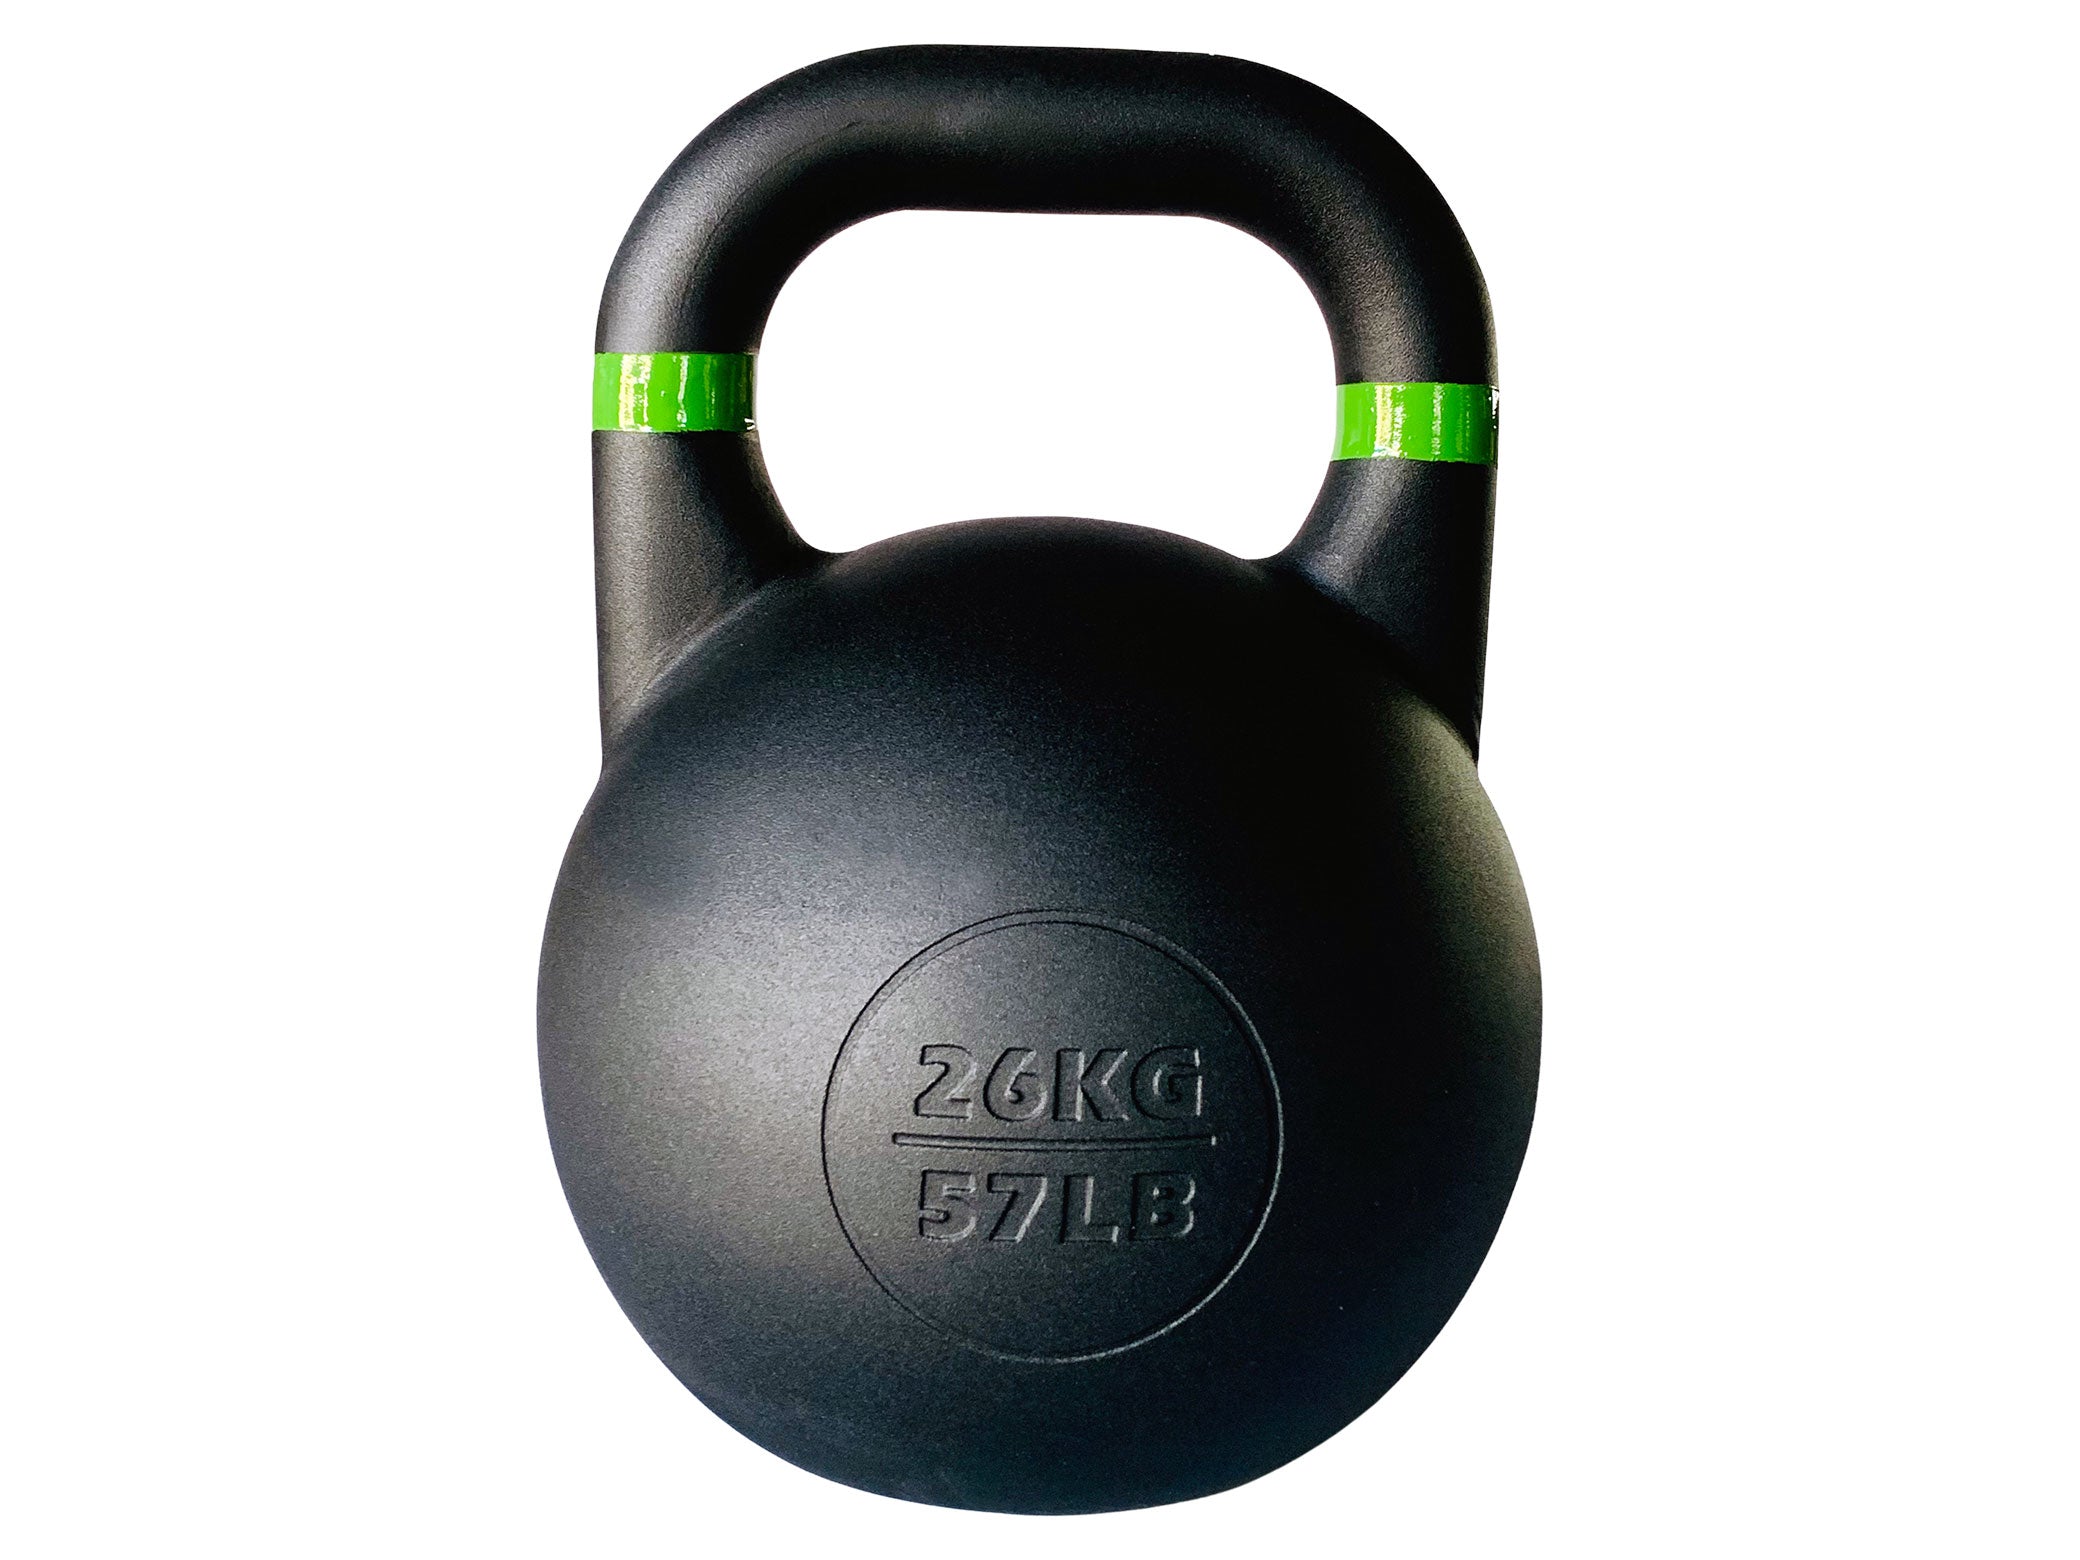 57LB Global Fitness Kettlebell